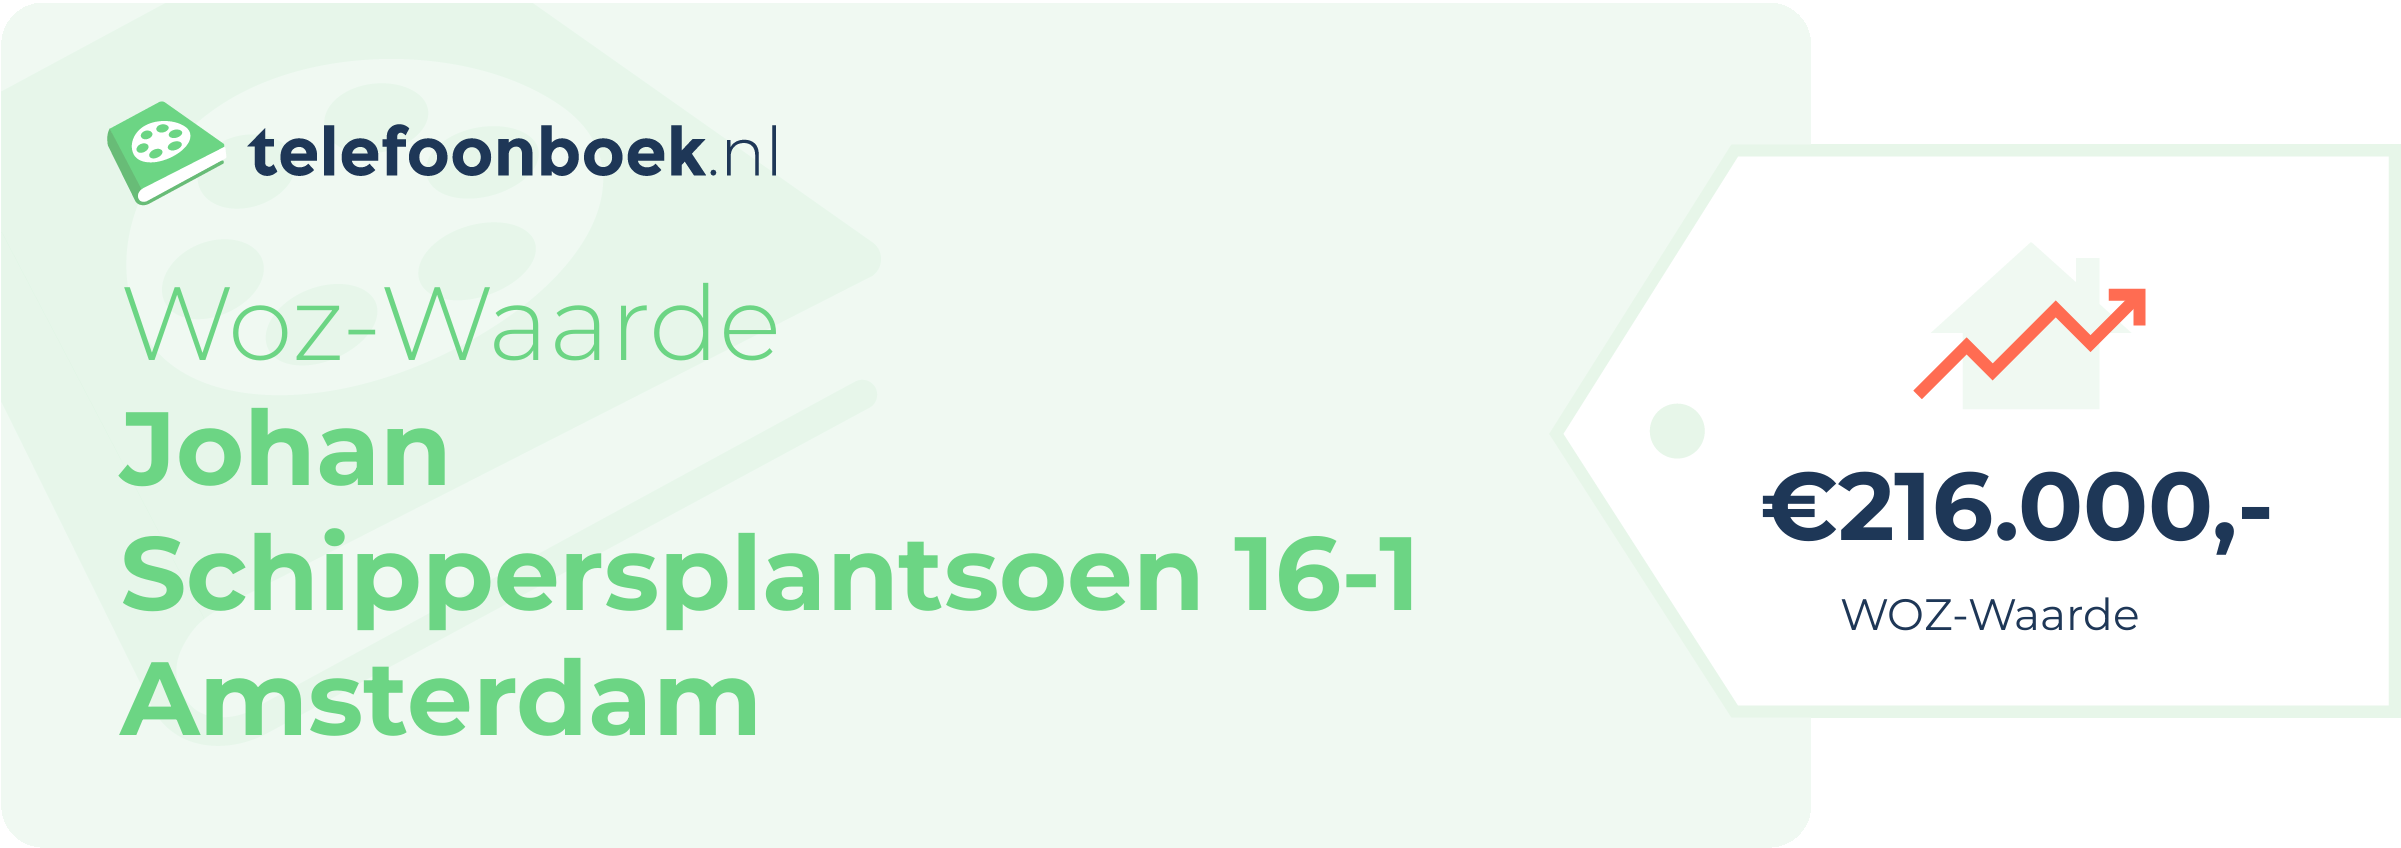 WOZ-waarde Johan Schippersplantsoen 16-1 Amsterdam